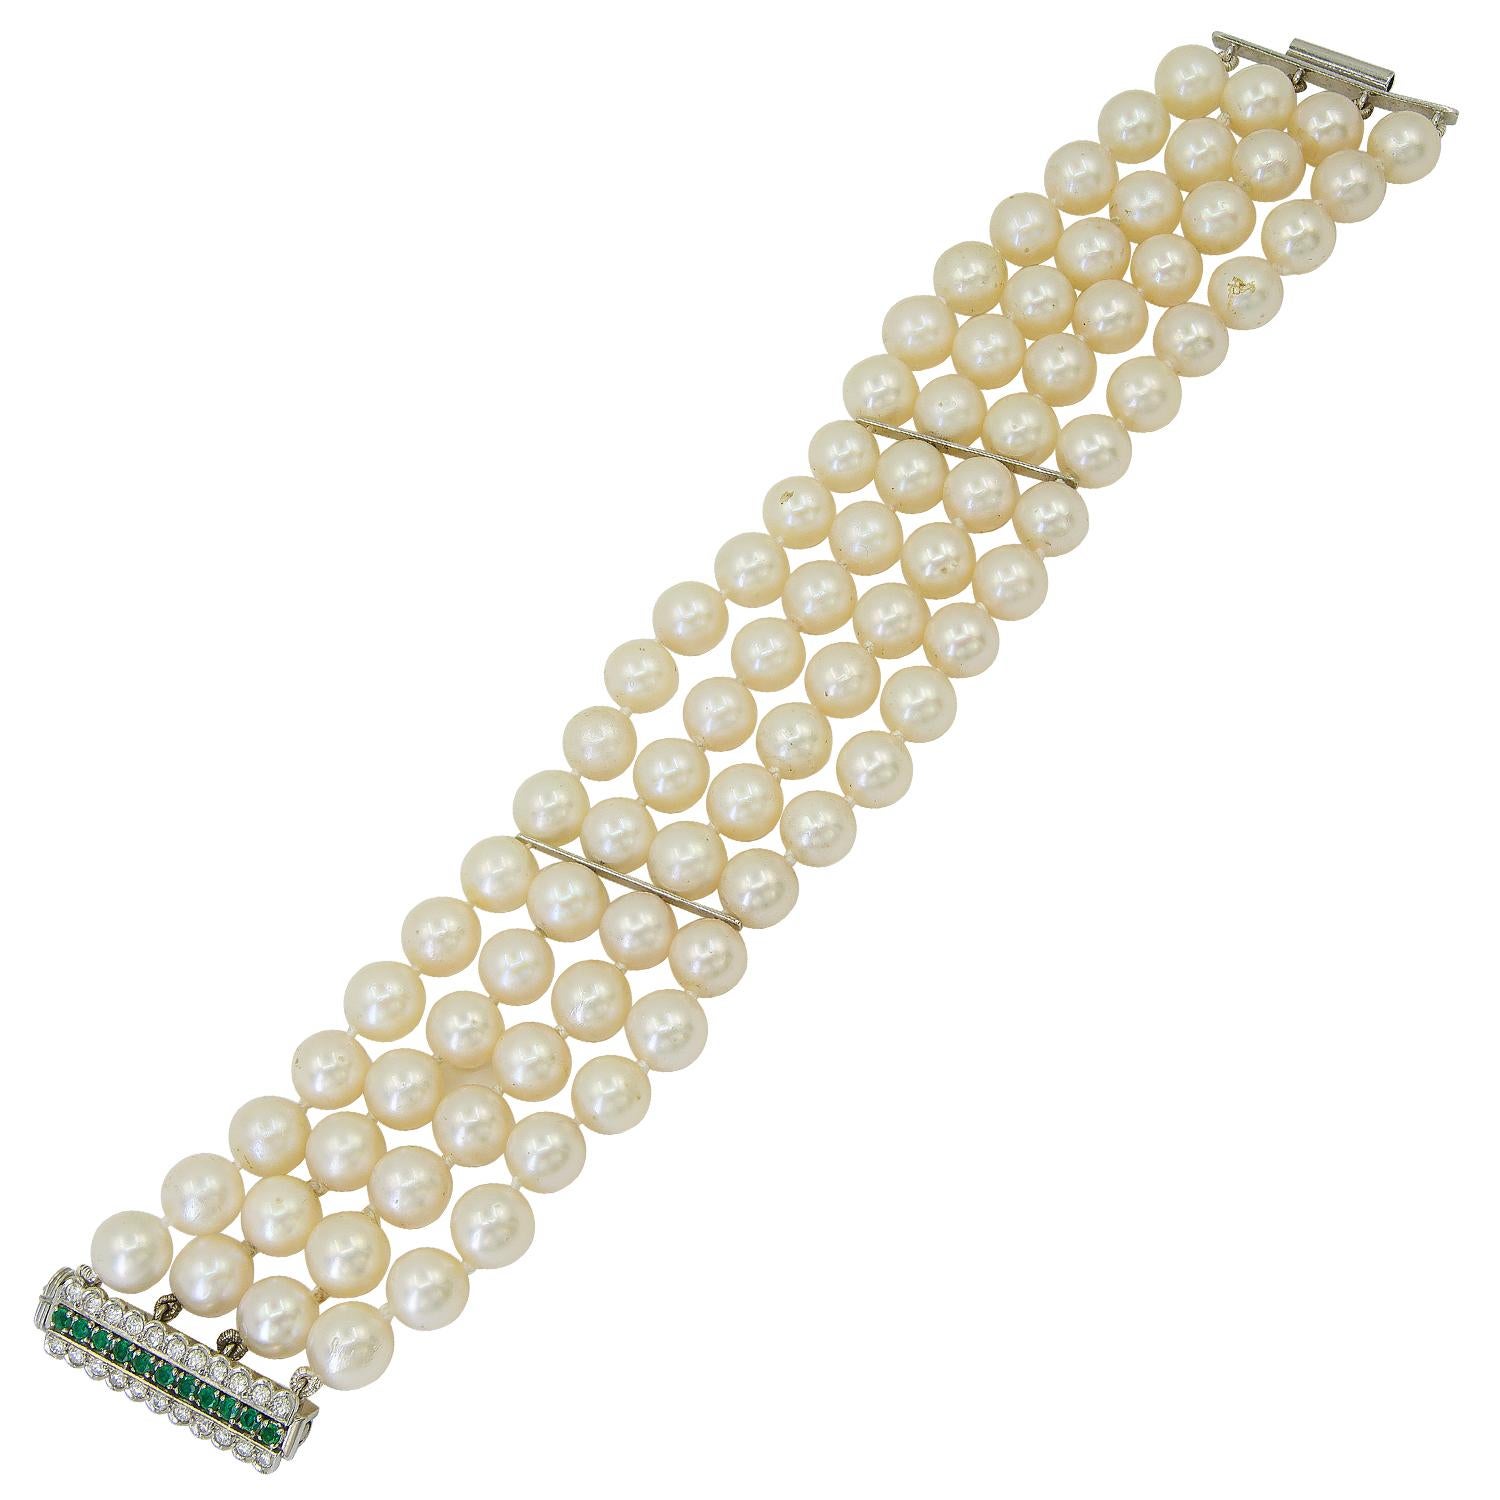 Bracelet quatre rangs de perles, diamants et émeraudes
Un bracelet multibrins en perles de culture, diamants et émeraudes.
Métal : platine
Perles : environ 7,7 mm
mesure environ 7″ de longueur par 1,25″ de largeur
vers les années 1990
